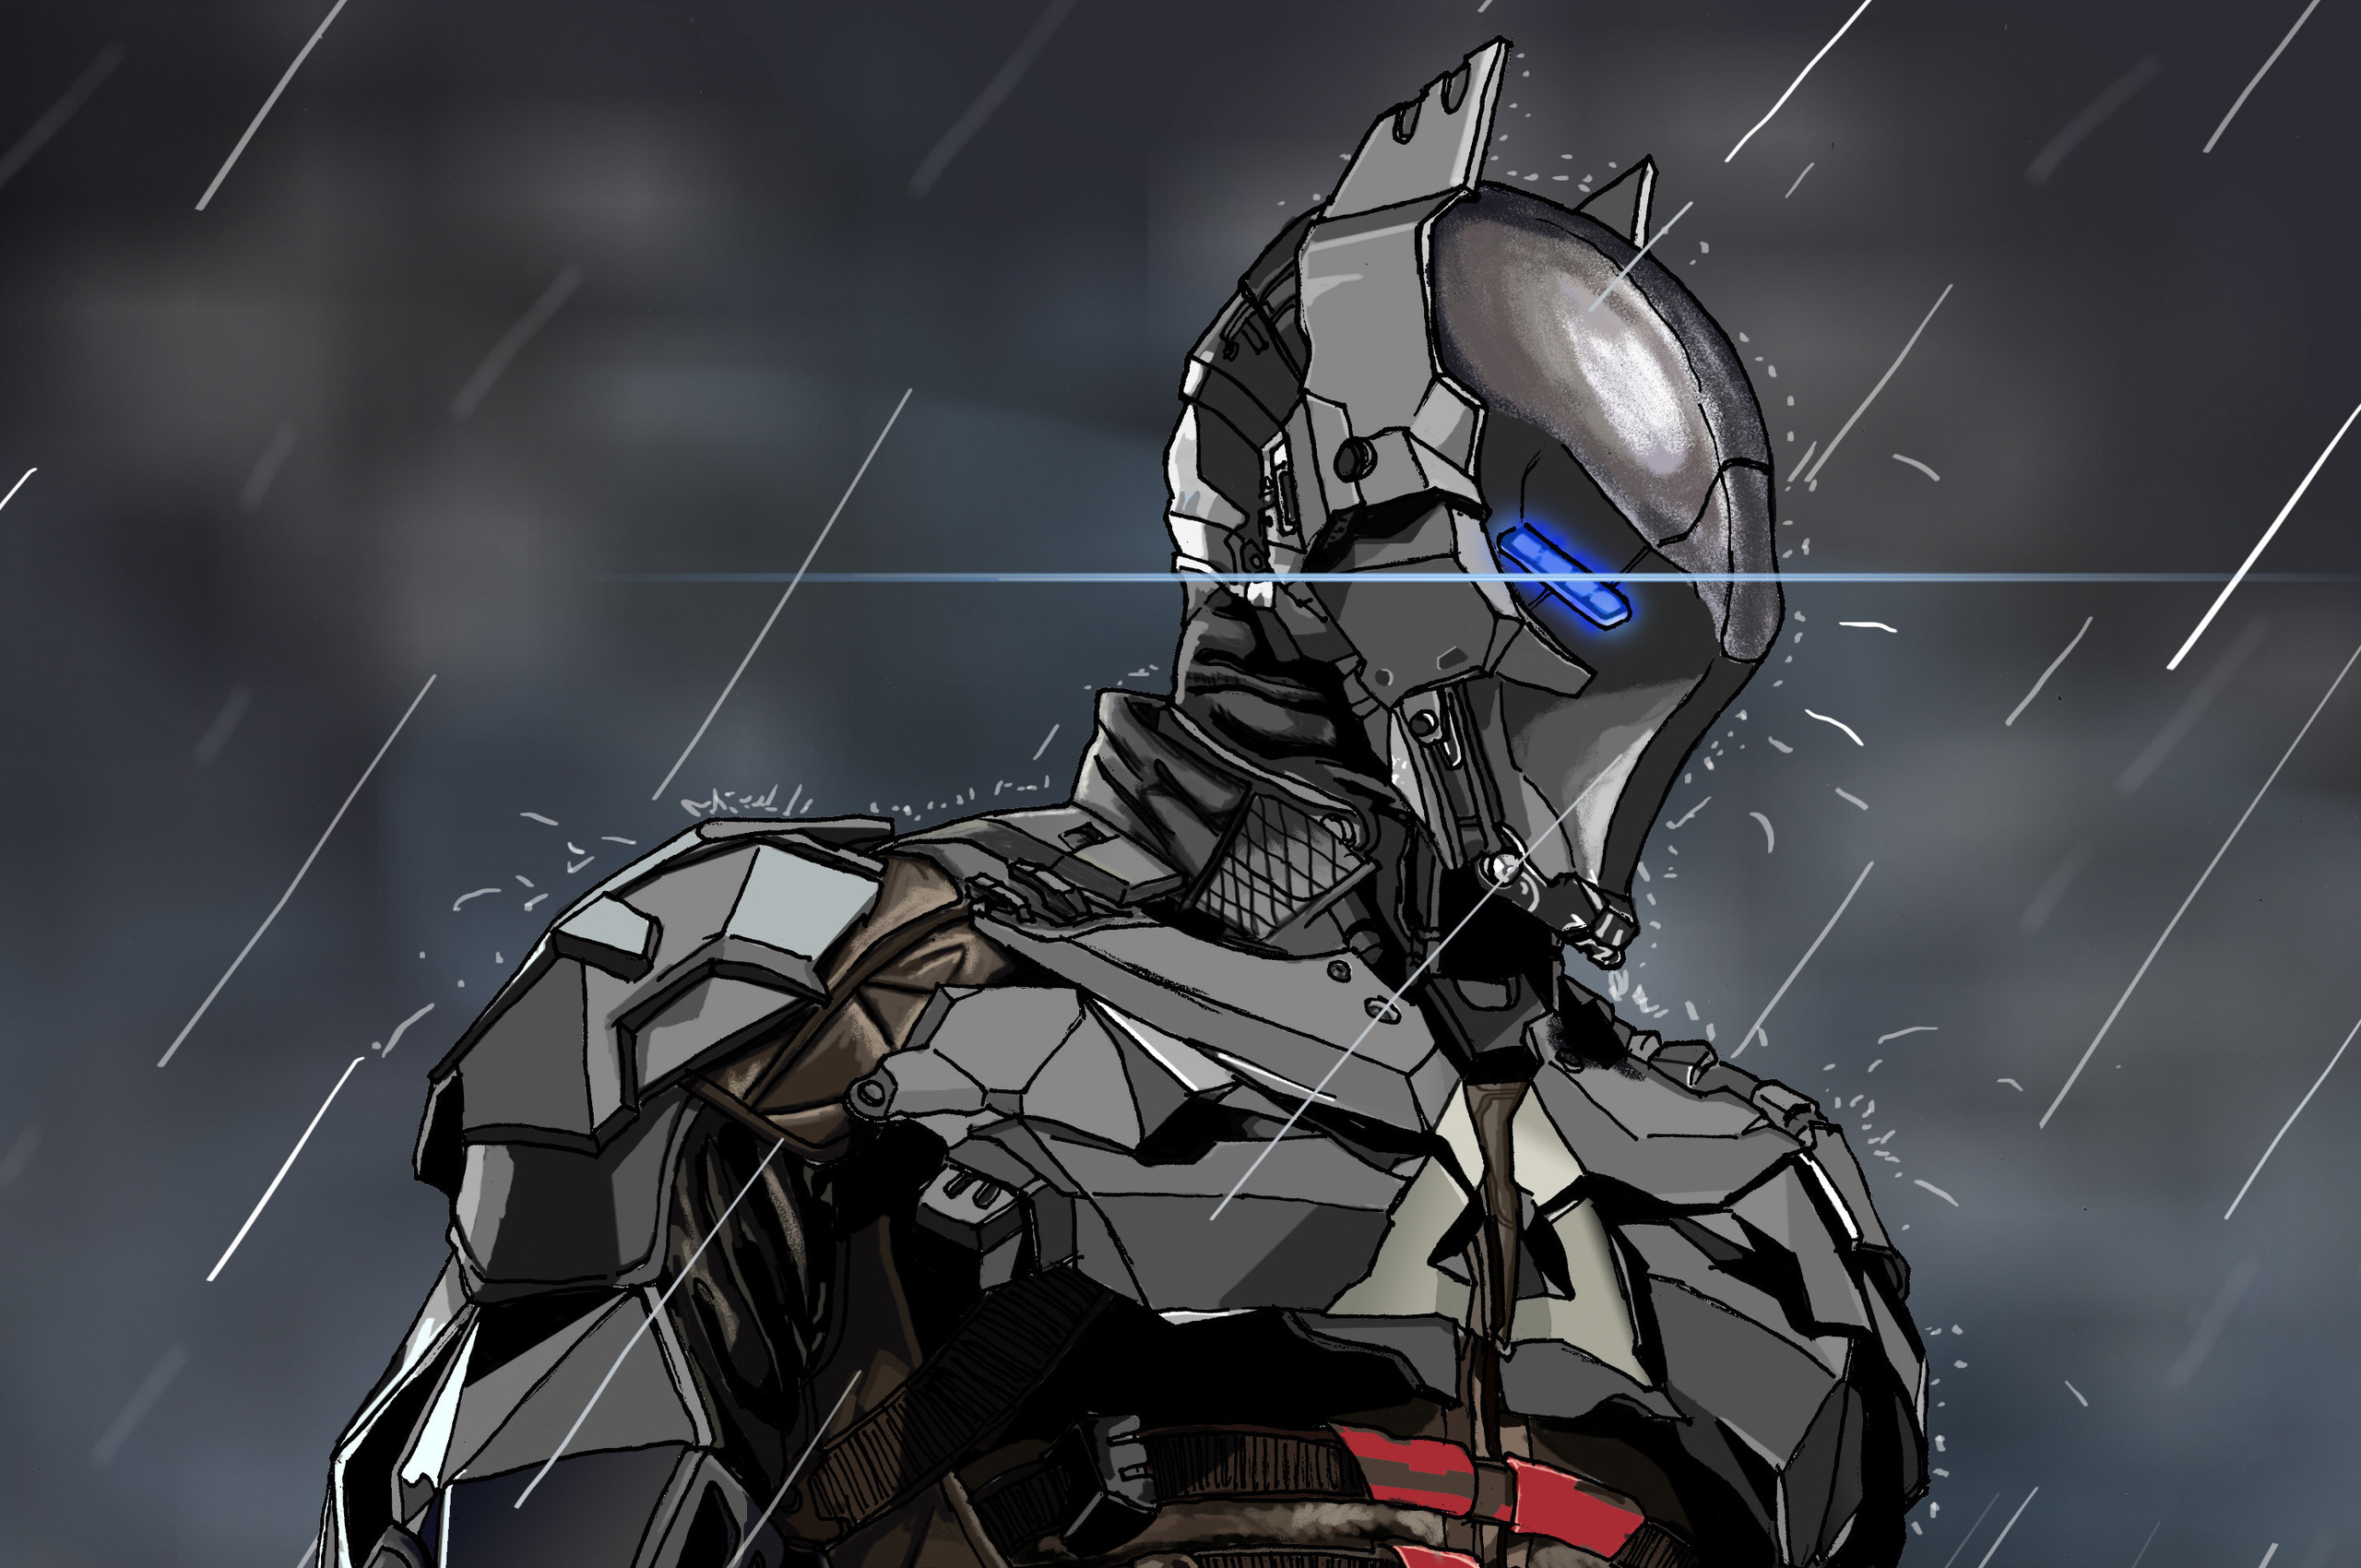 Batman Arkham Knight Digital Art In 2560x1700 Resolution. batman-arkham-kni...